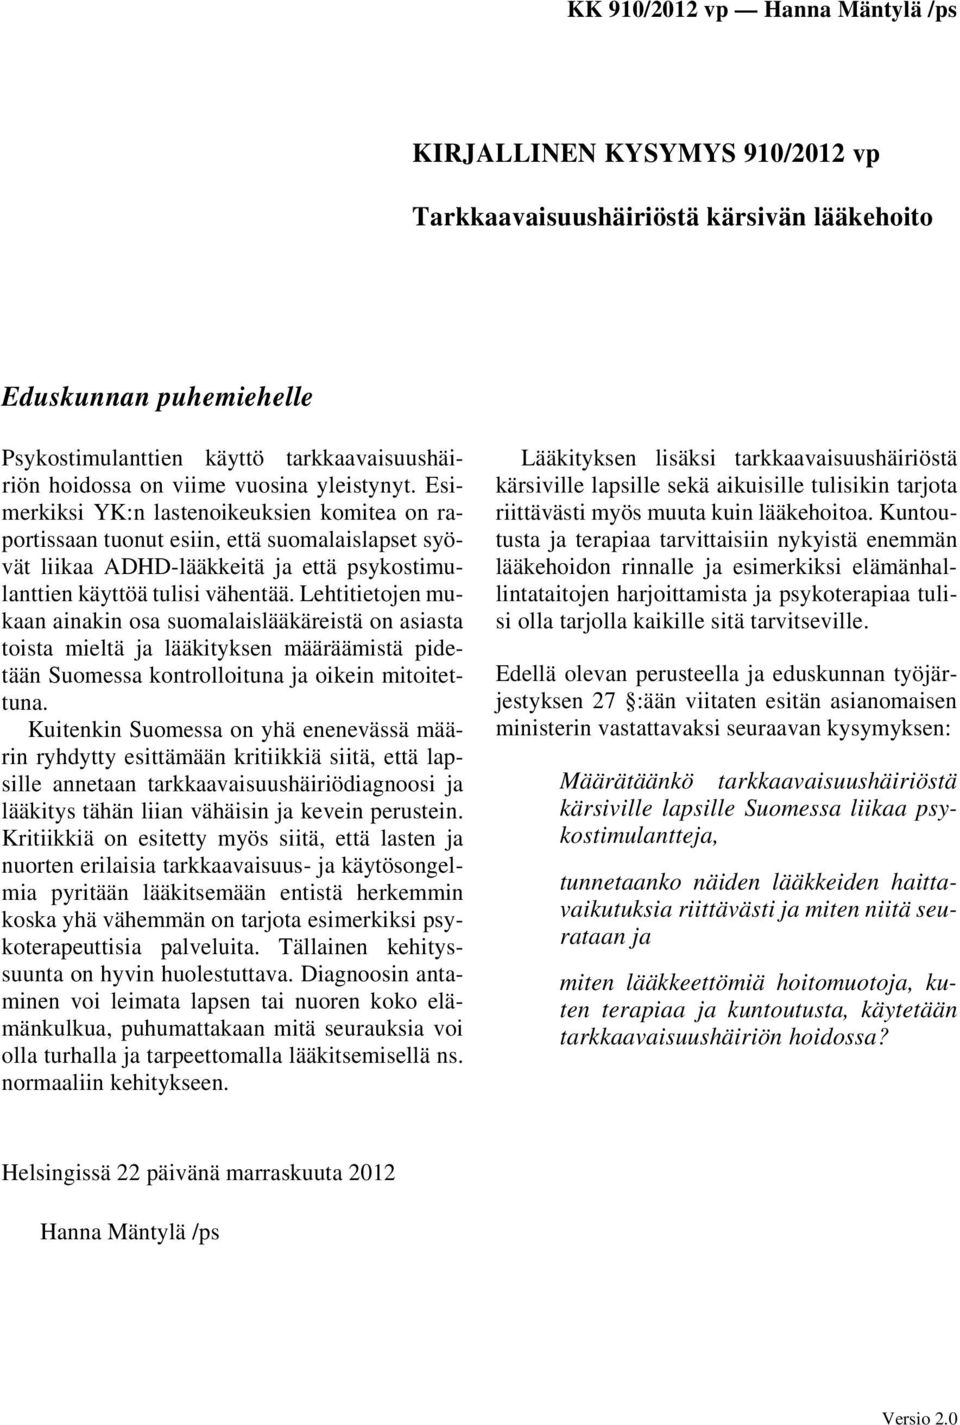 Lehtitietojen mukaan ainakin osa suomalaislääkäreistä on asiasta toista mieltä ja lääkityksen määräämistä pidetään Suomessa kontrolloituna ja oikein mitoitettuna.